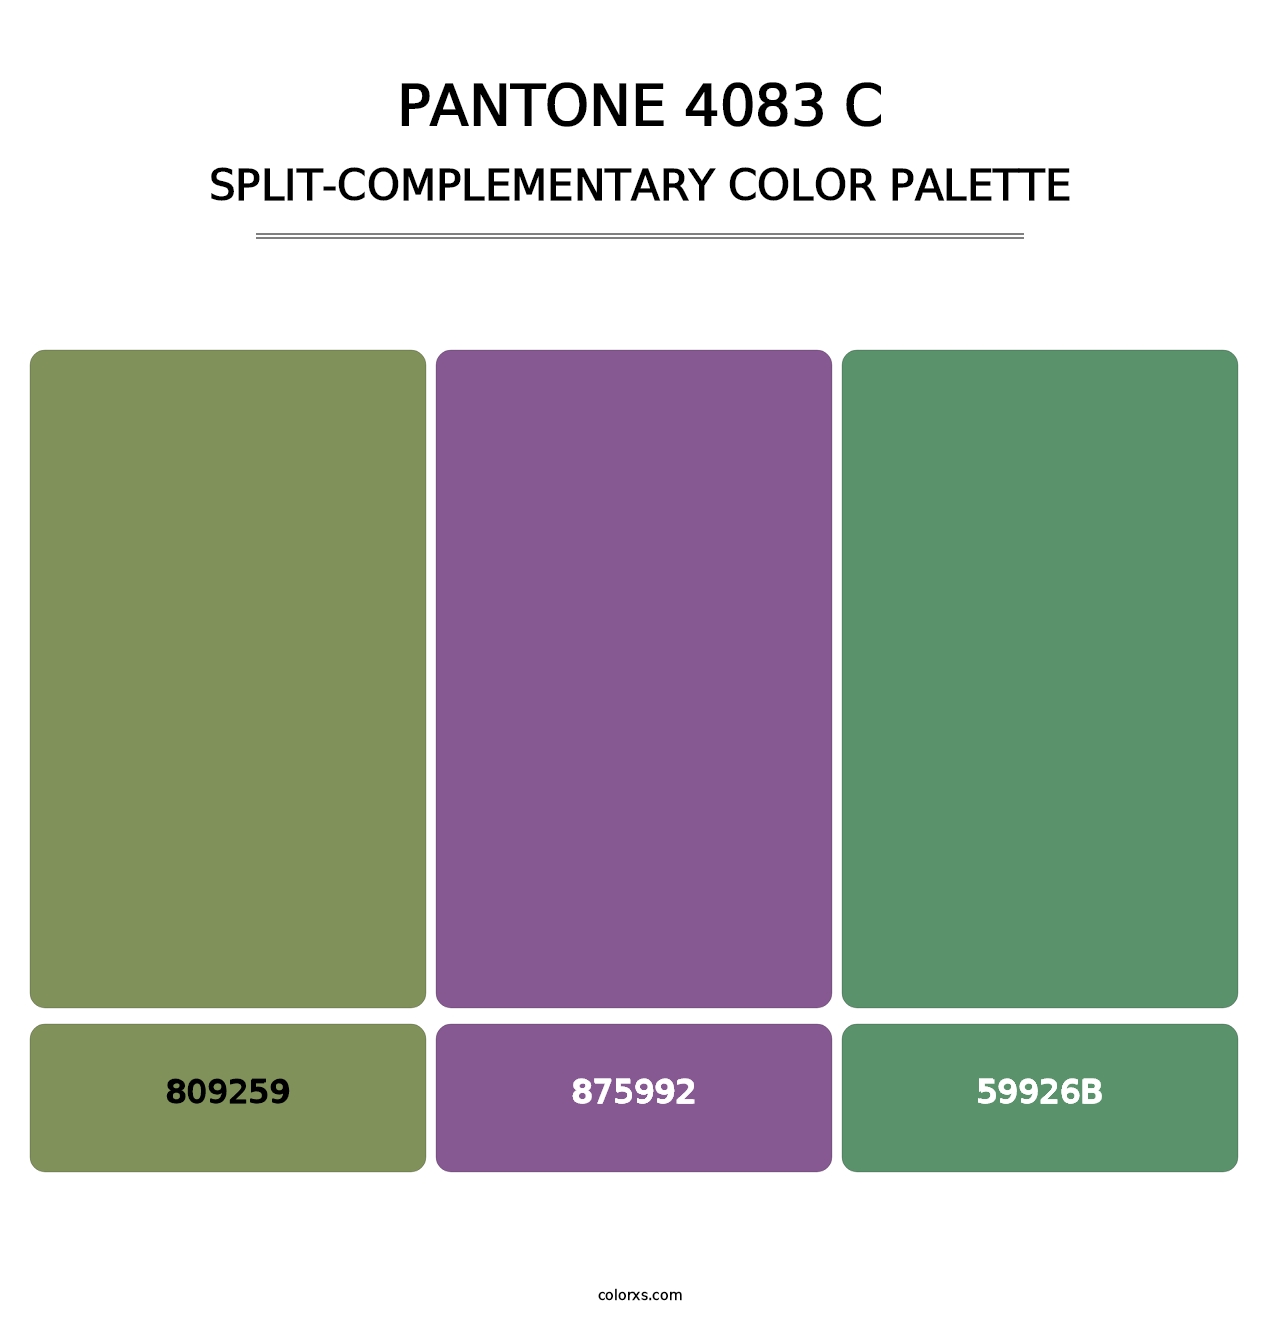 PANTONE 4083 C - Split-Complementary Color Palette